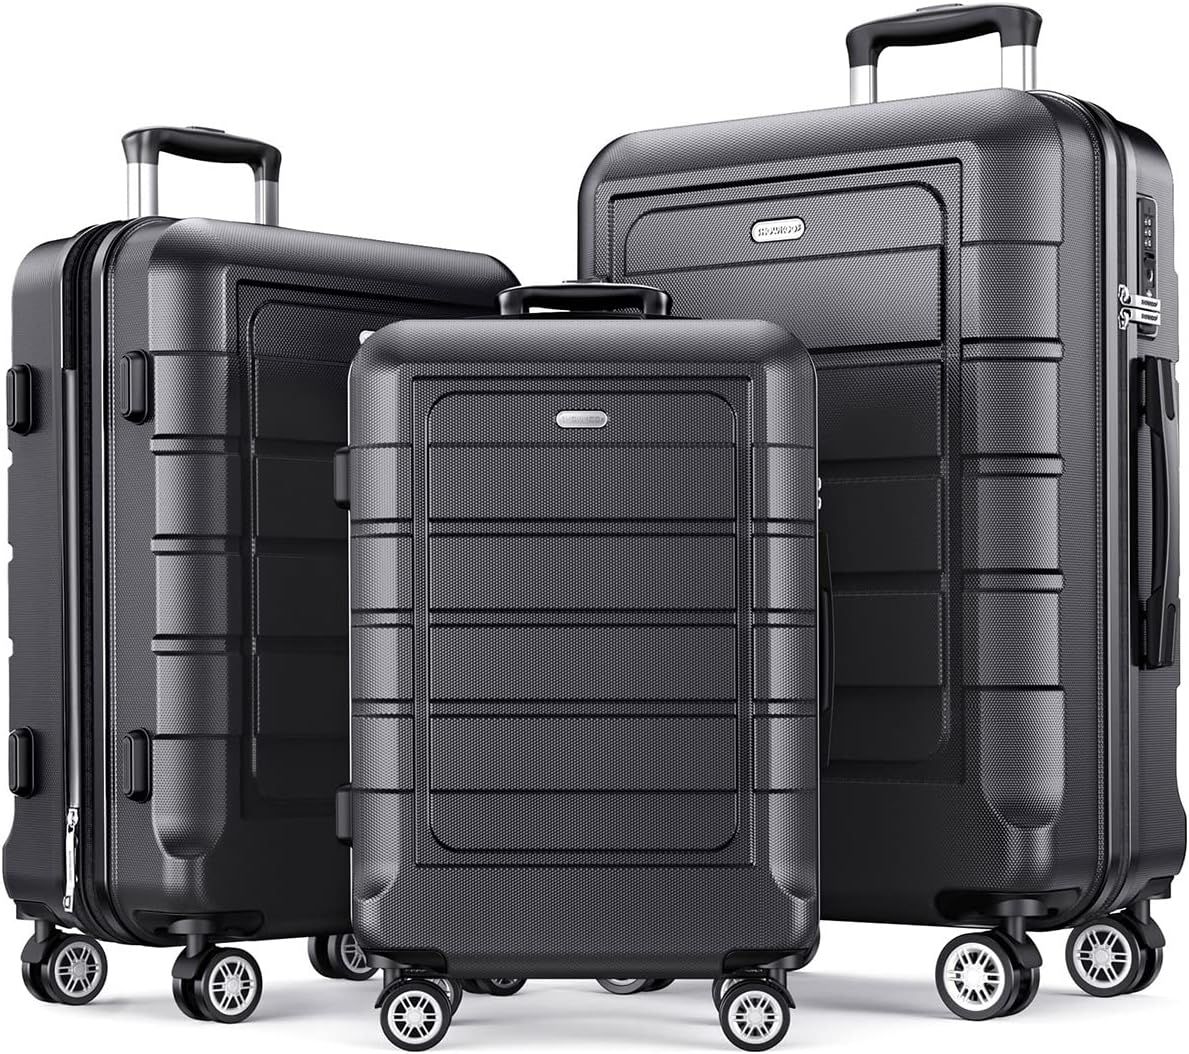 SHOWKOO Luggage Sets Expandable Suitcase Double Wheels TSA Lock (Gray) | Amazon (US)